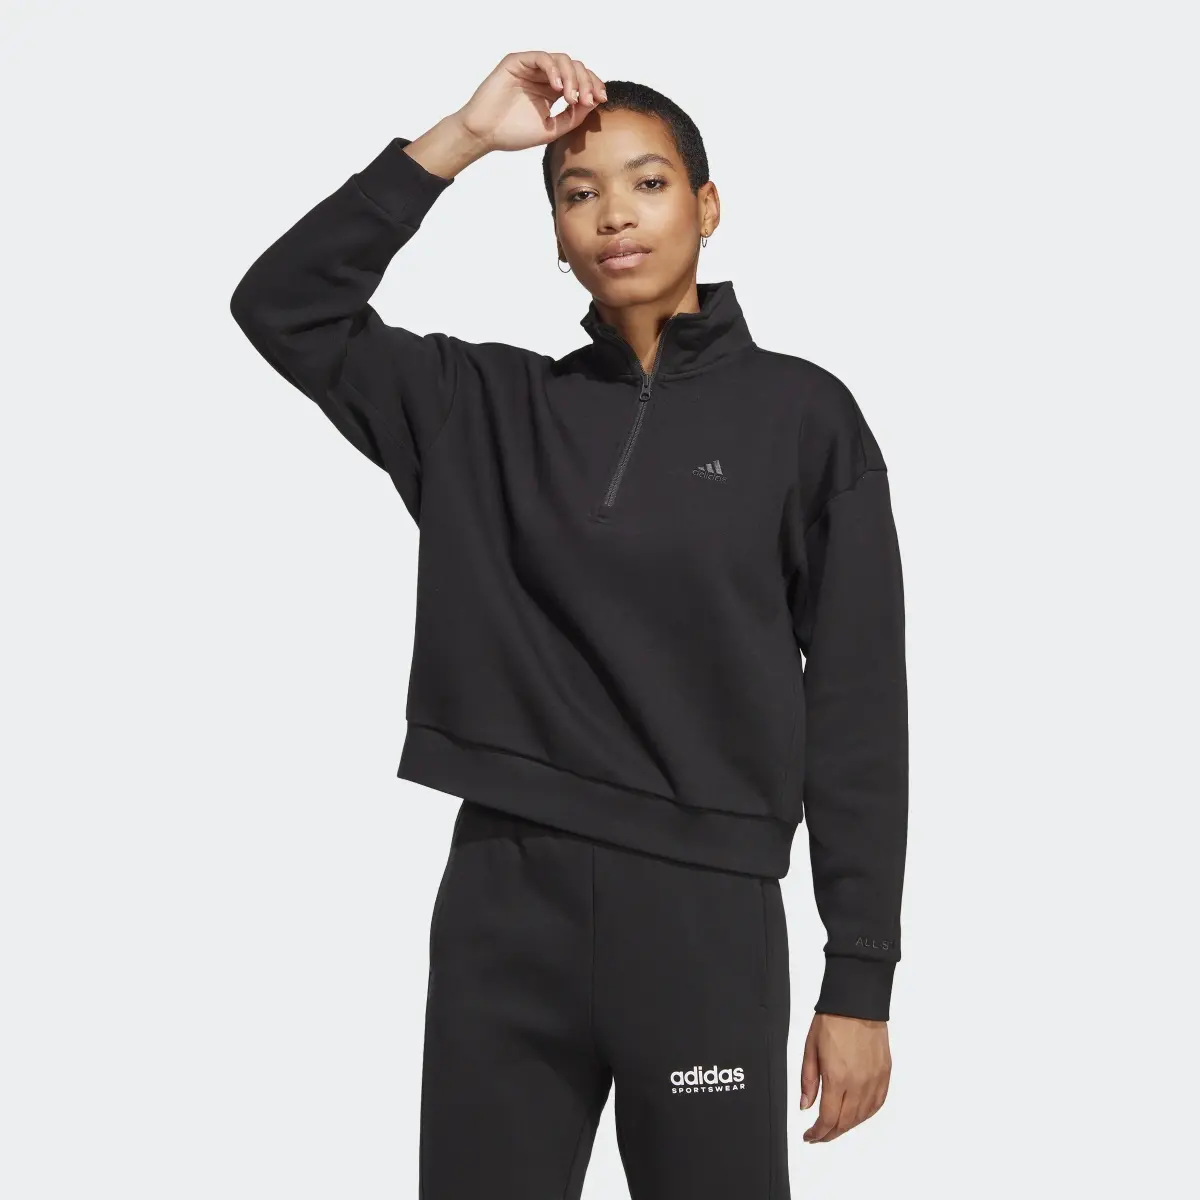 Adidas ALL SZN Fleece Graphic Quarter-Zip Sweatshirt. 2